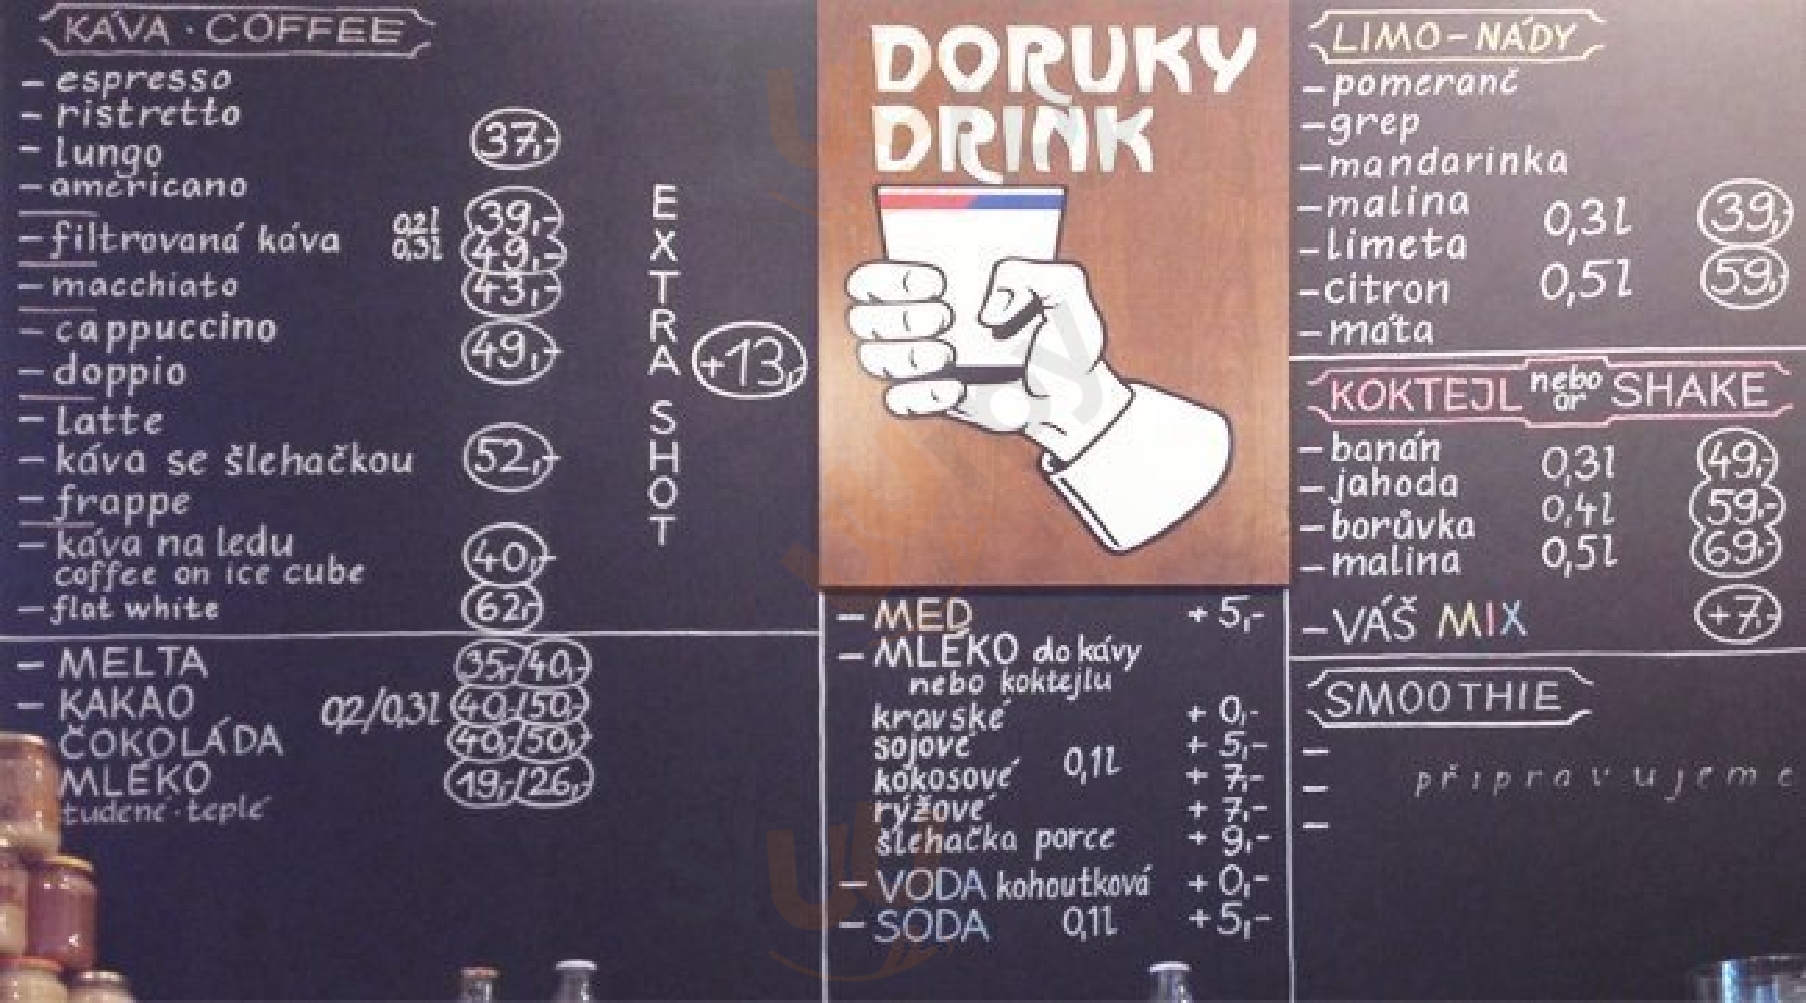 Doruky Drink Praha Menu - 1